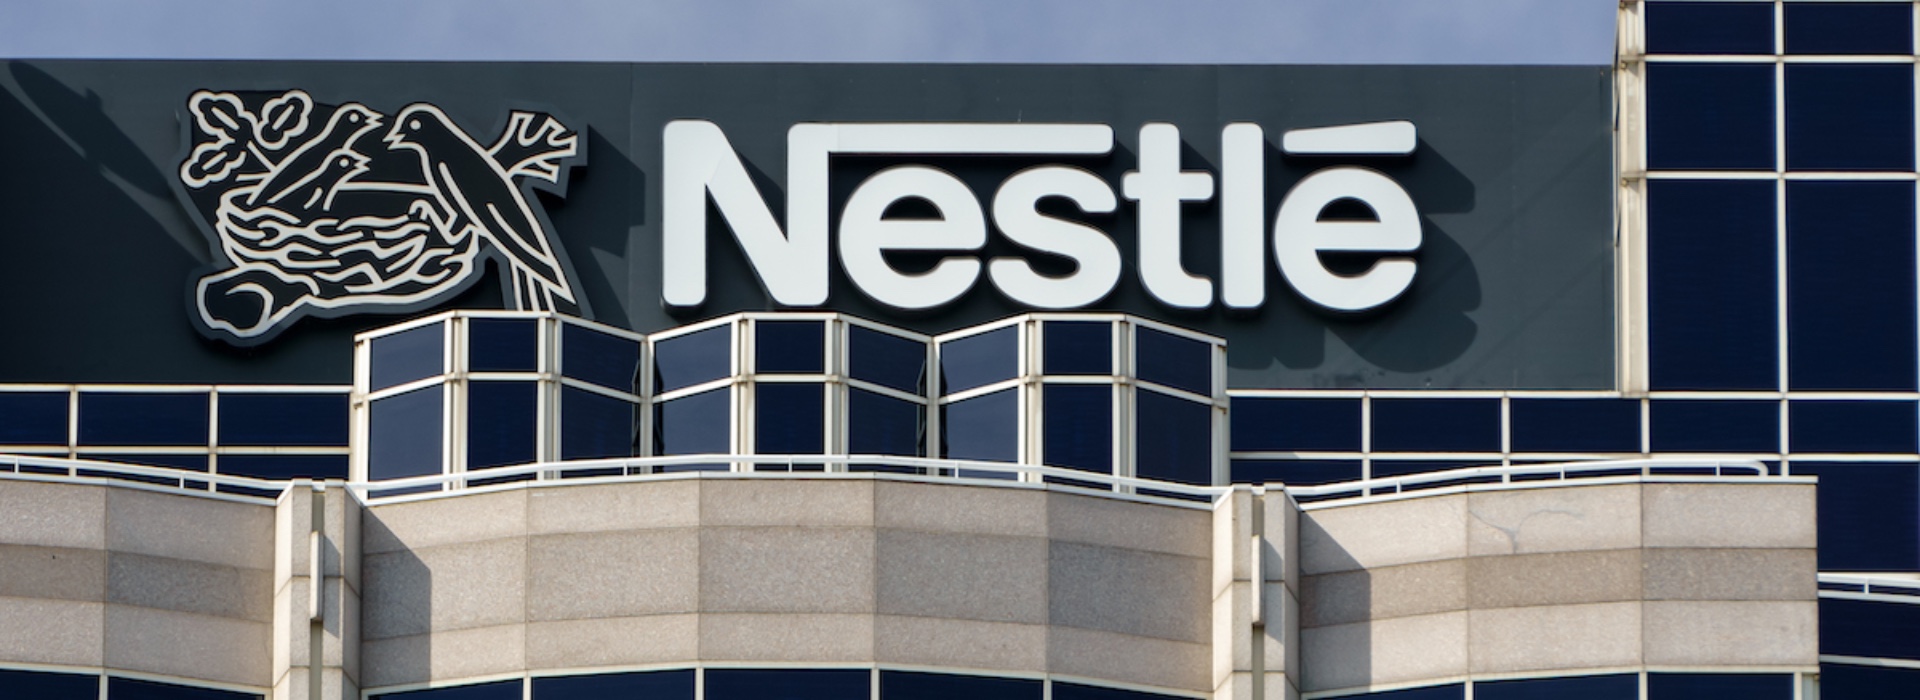 Nestlé sotto accusa: aggiunta di zucchero nei cereali e nel latte per bambini nei paesi in via di sviluppo